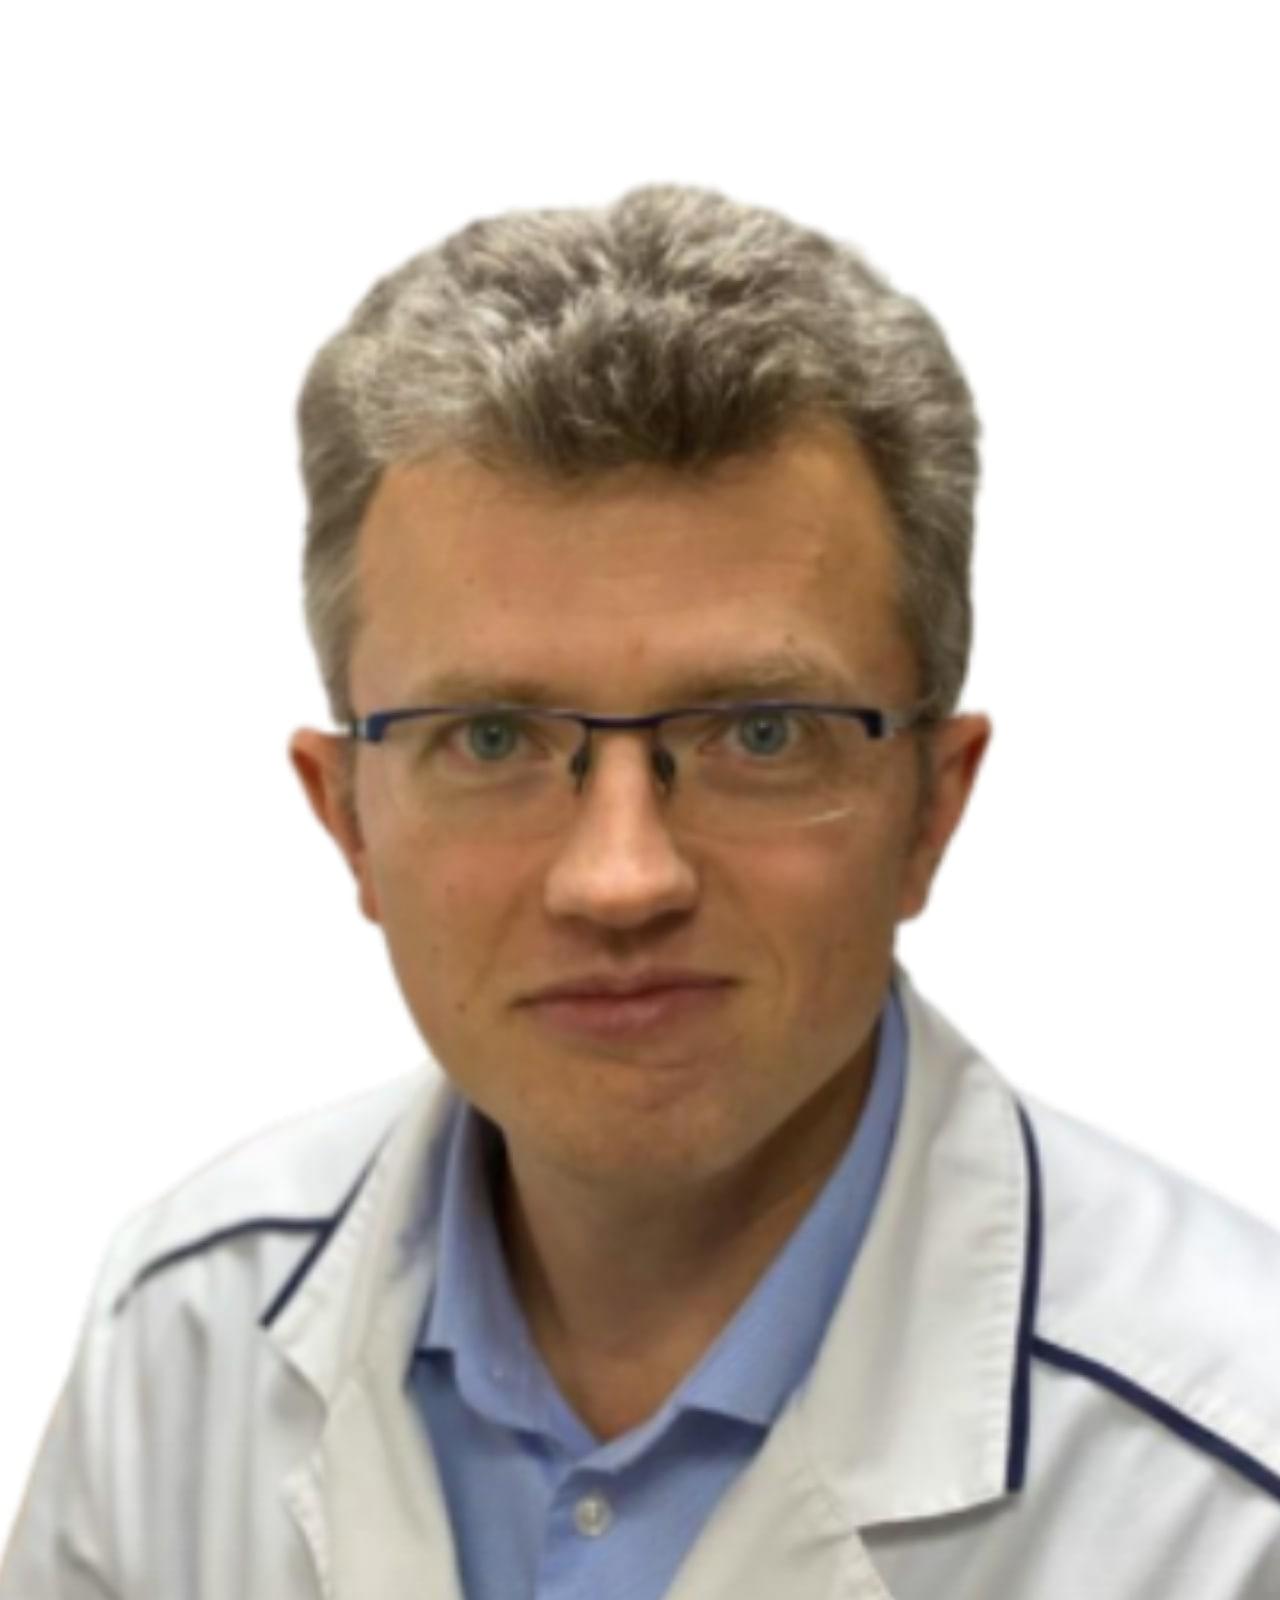 Михалутин Андрей Евгеньевич - Врач общей практики, врач ультразвуковой диагностики